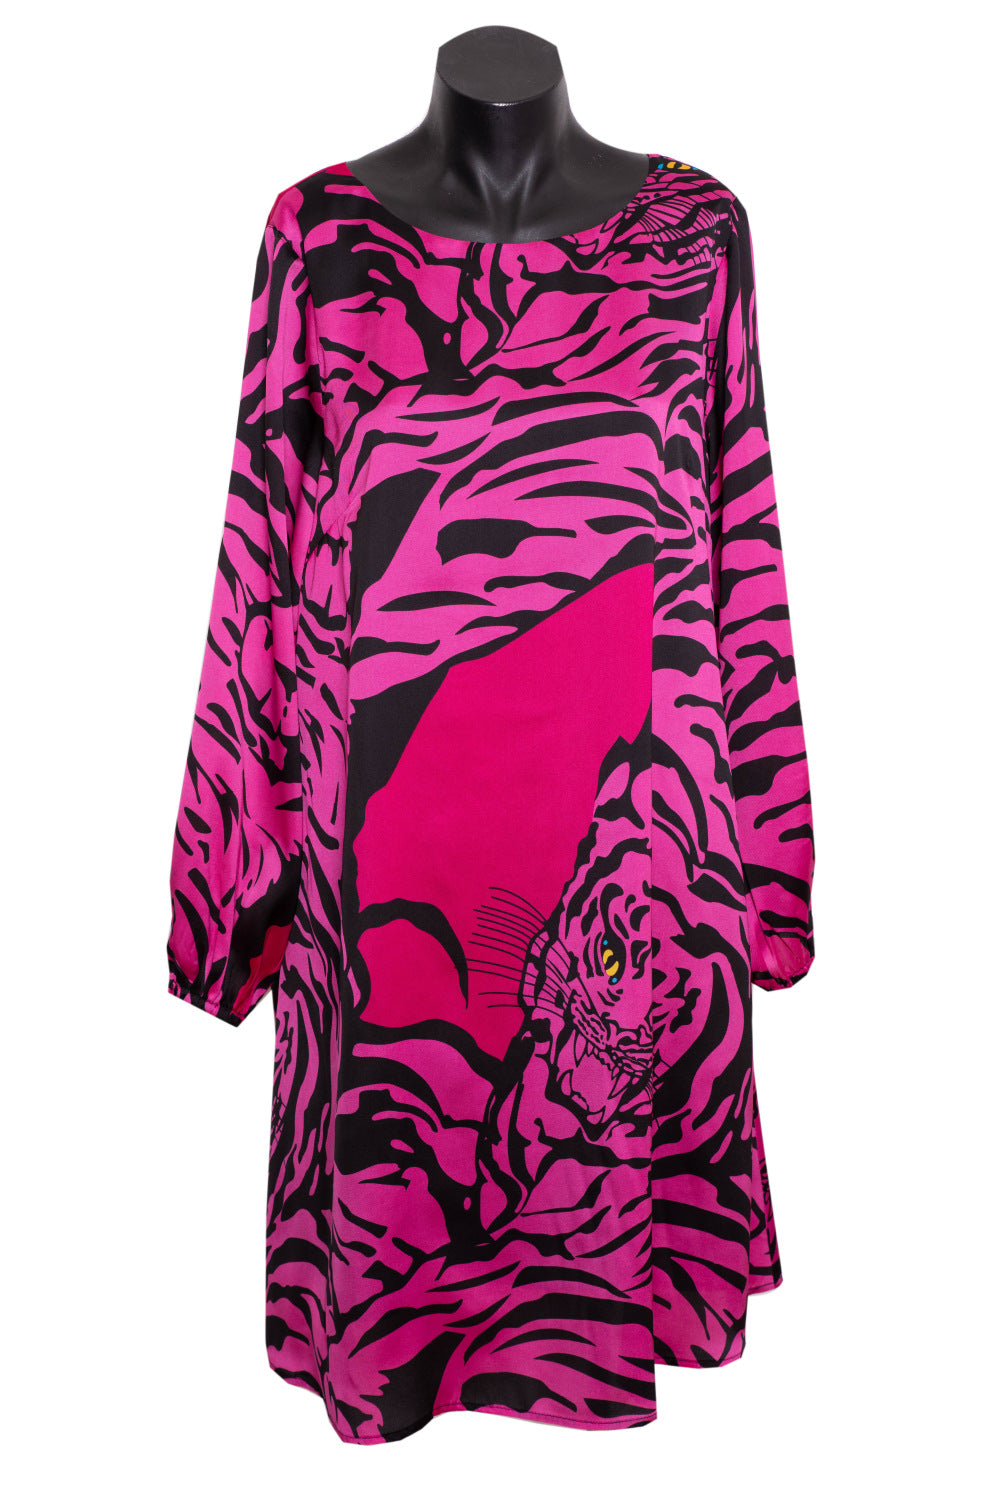 Shilo Dress Guchette - Pink